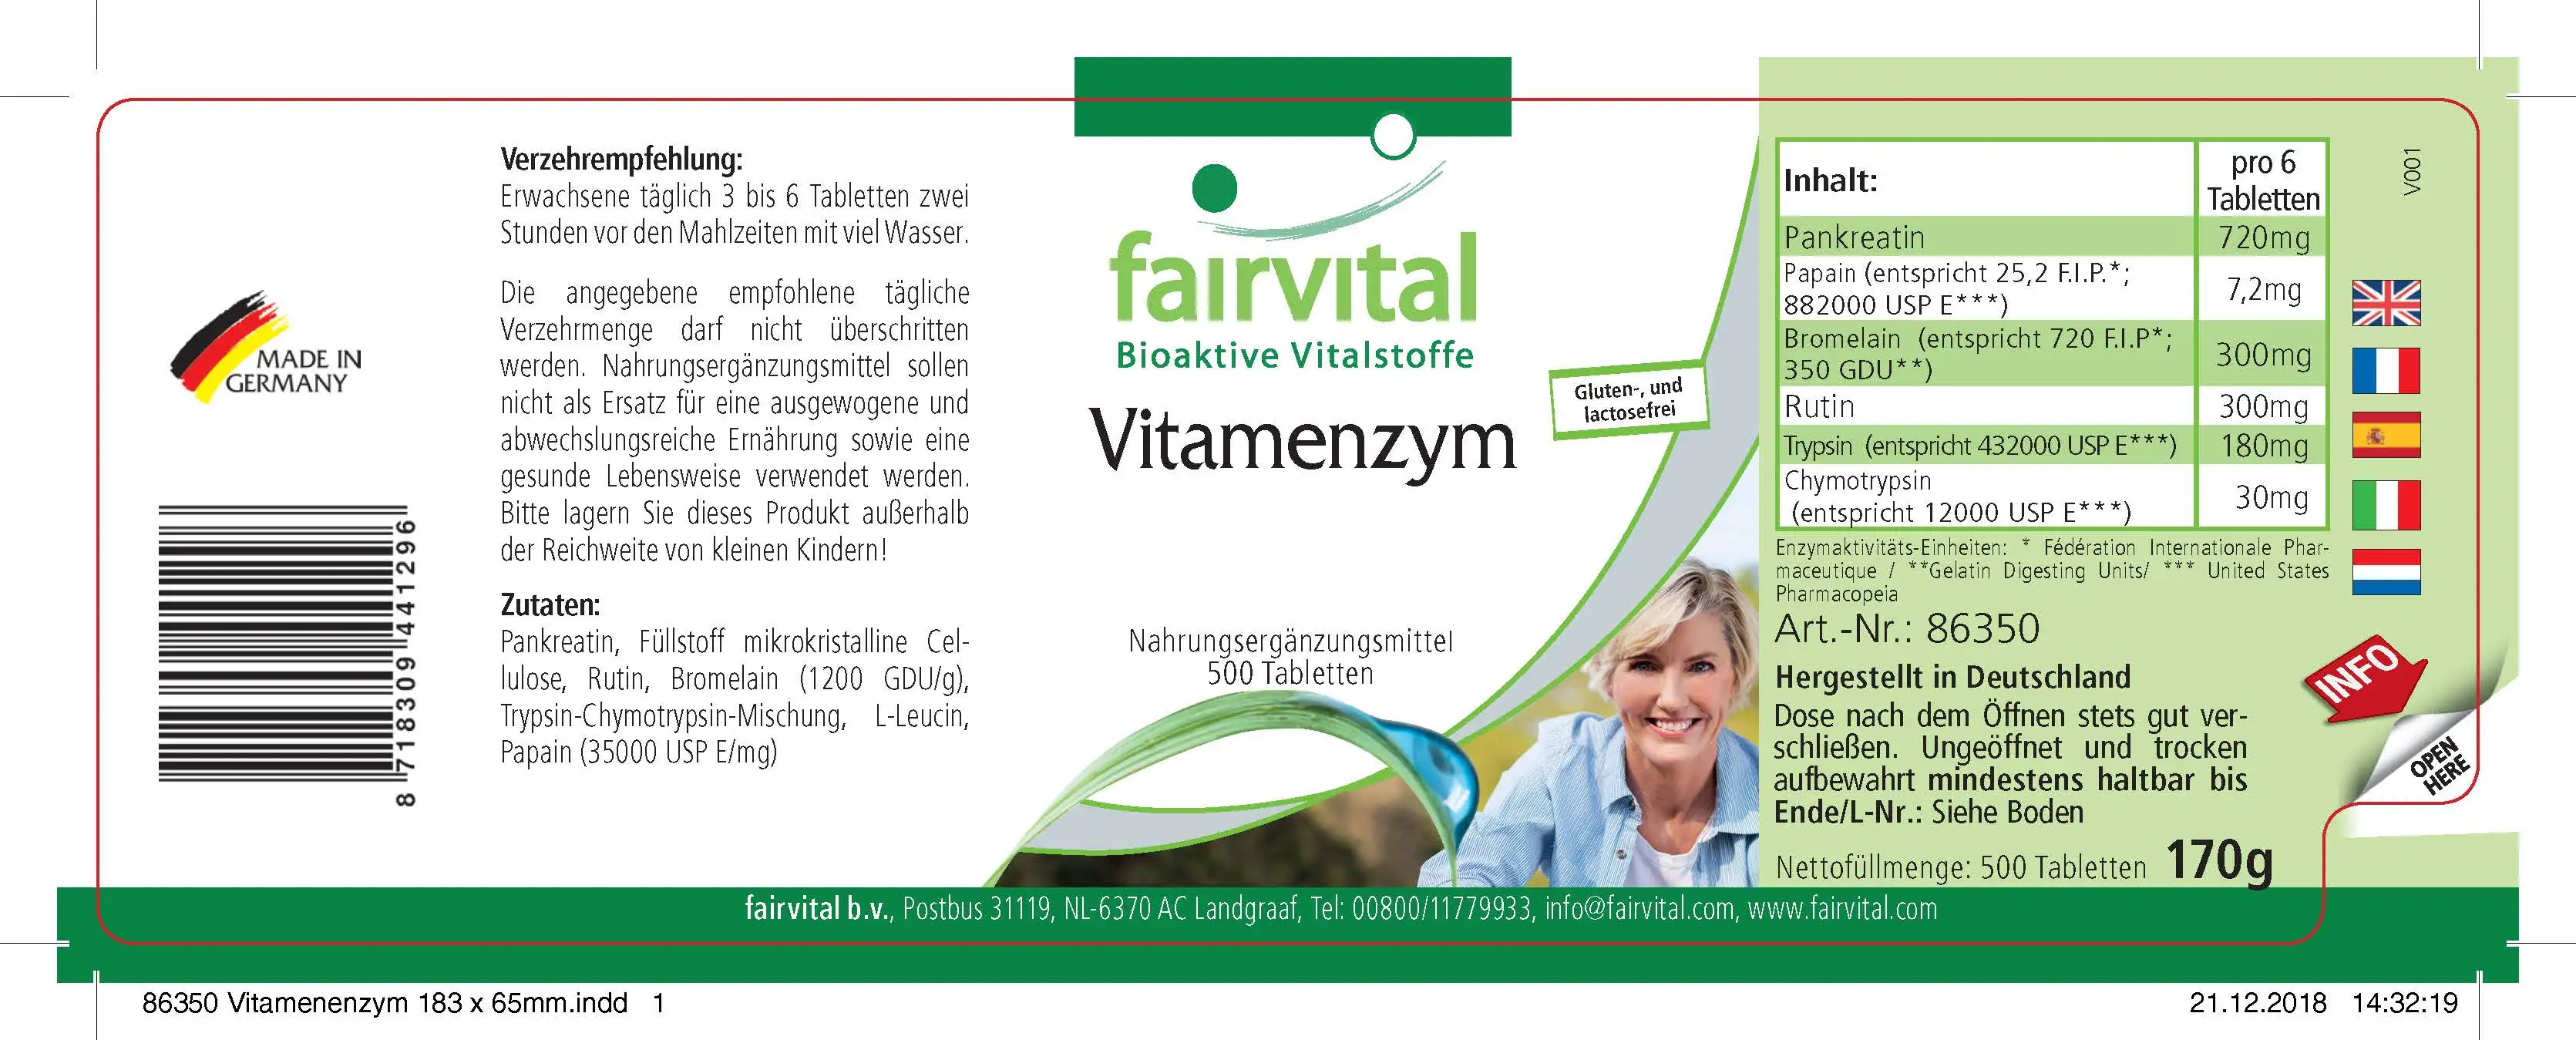 Vitamenzym - Complejo de vitaminas y enzimas - 500 comprimidos